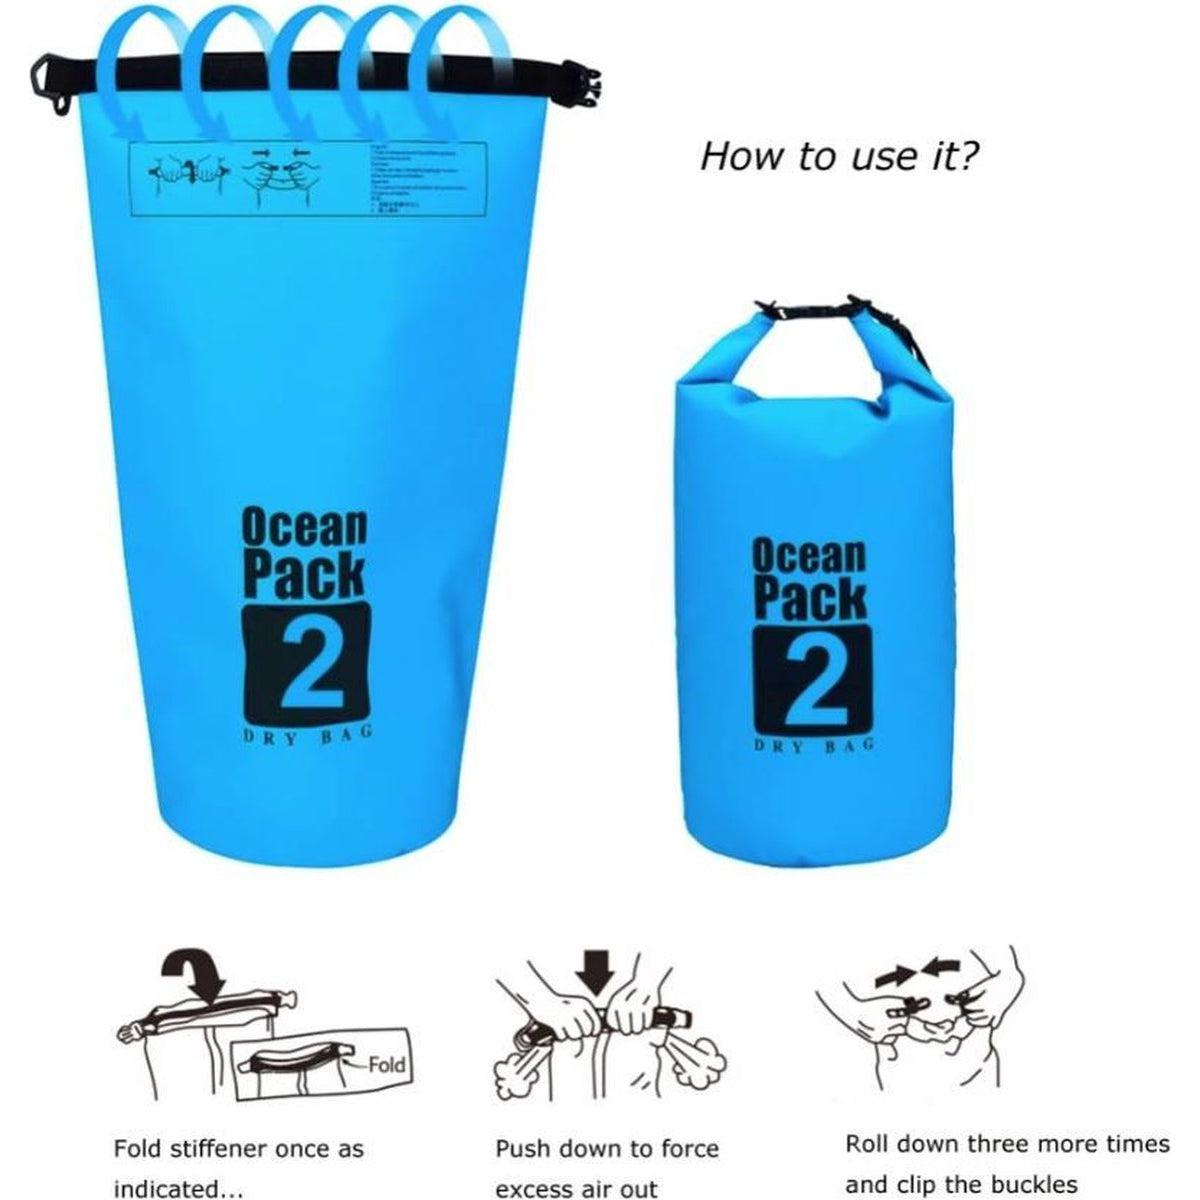 Waterdichte Tas - Dry bag - Ocean Pack 20L